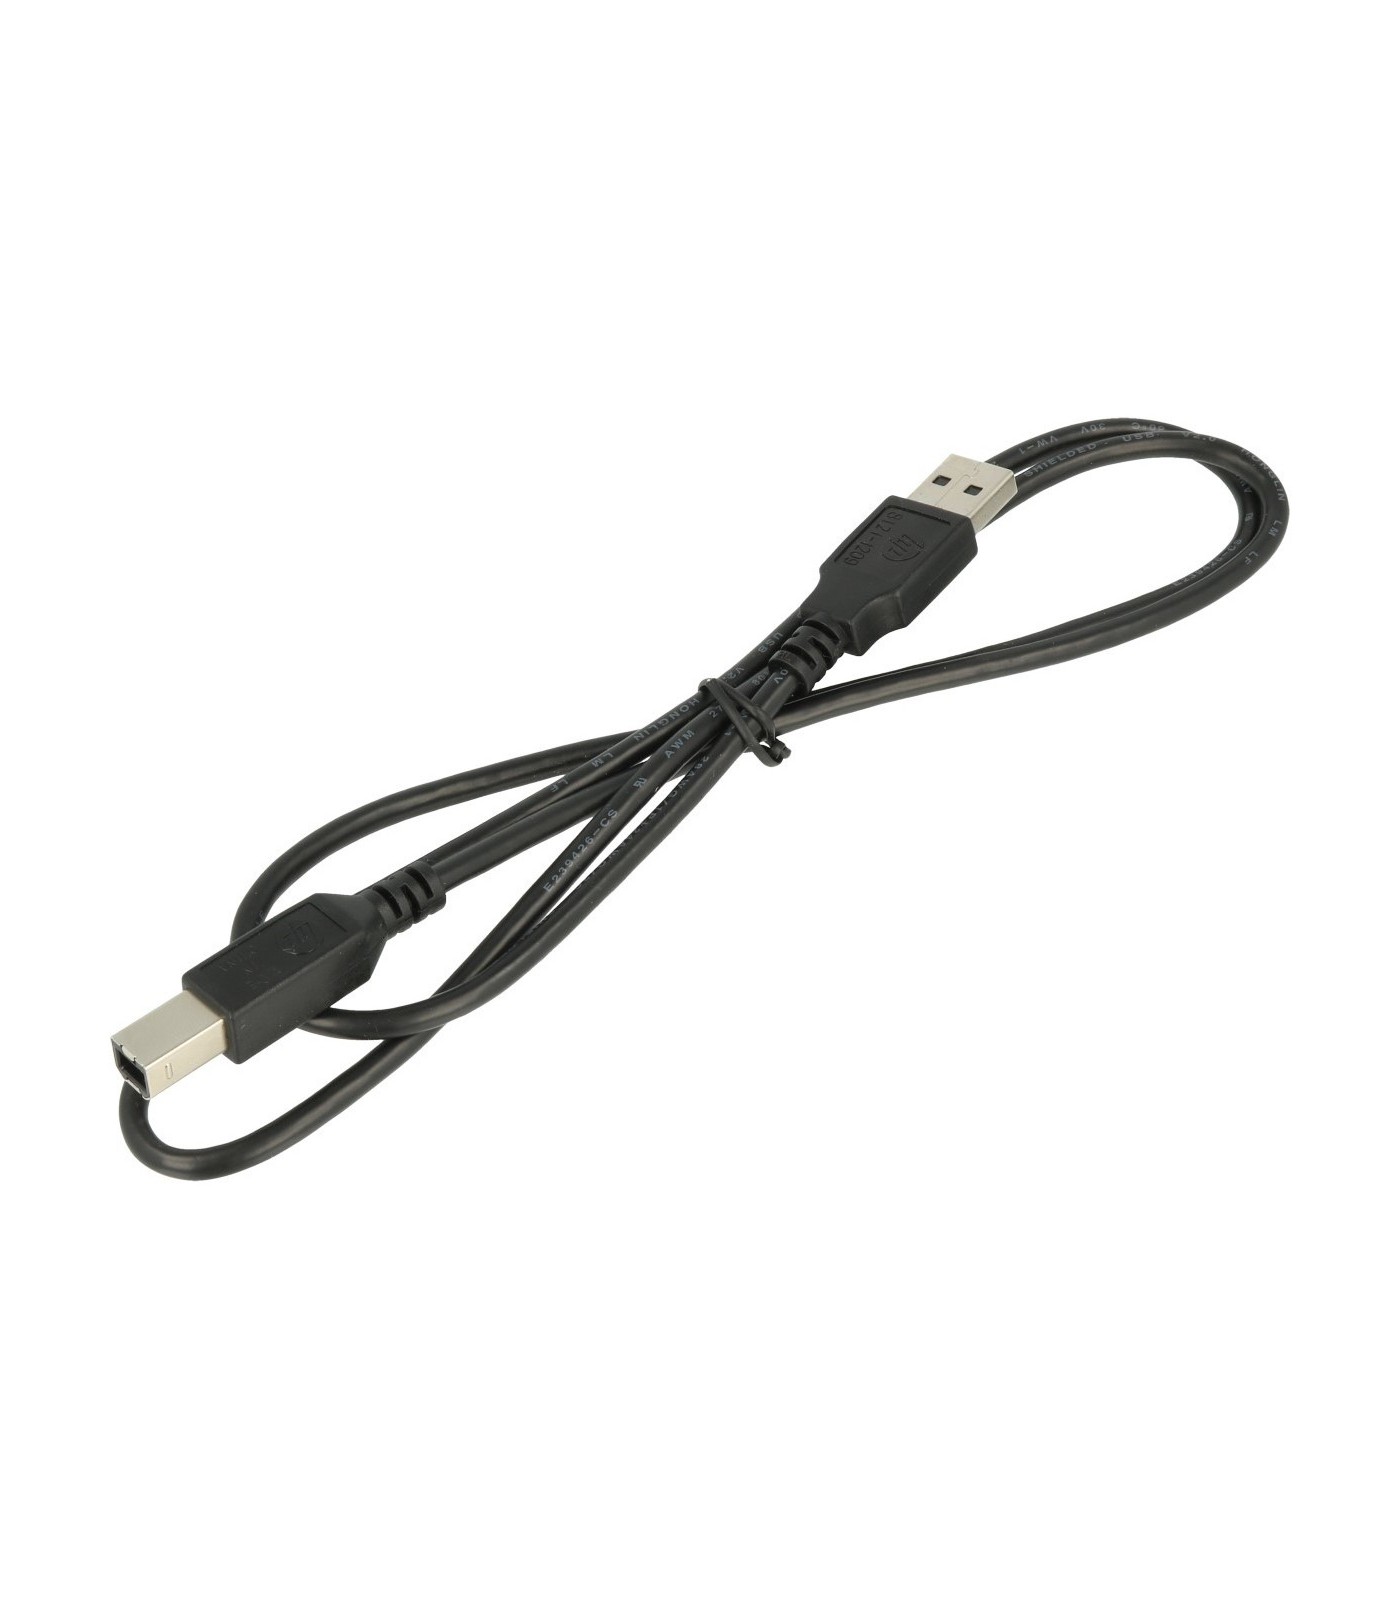 Poleasingowy kabel USB do drukarki